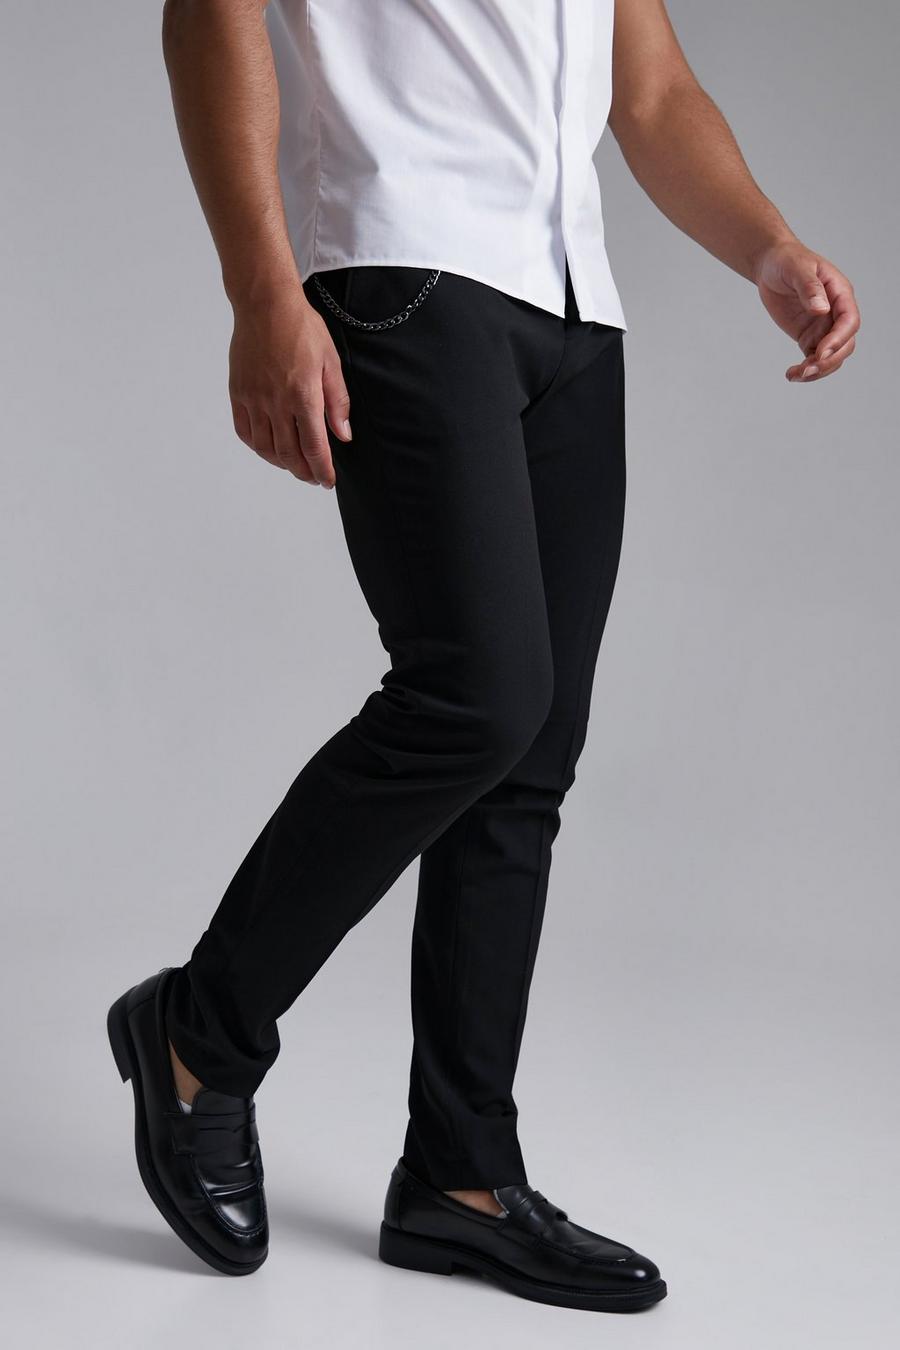 Pantalón Tall pitillo elegante liso con cadena, Black negro